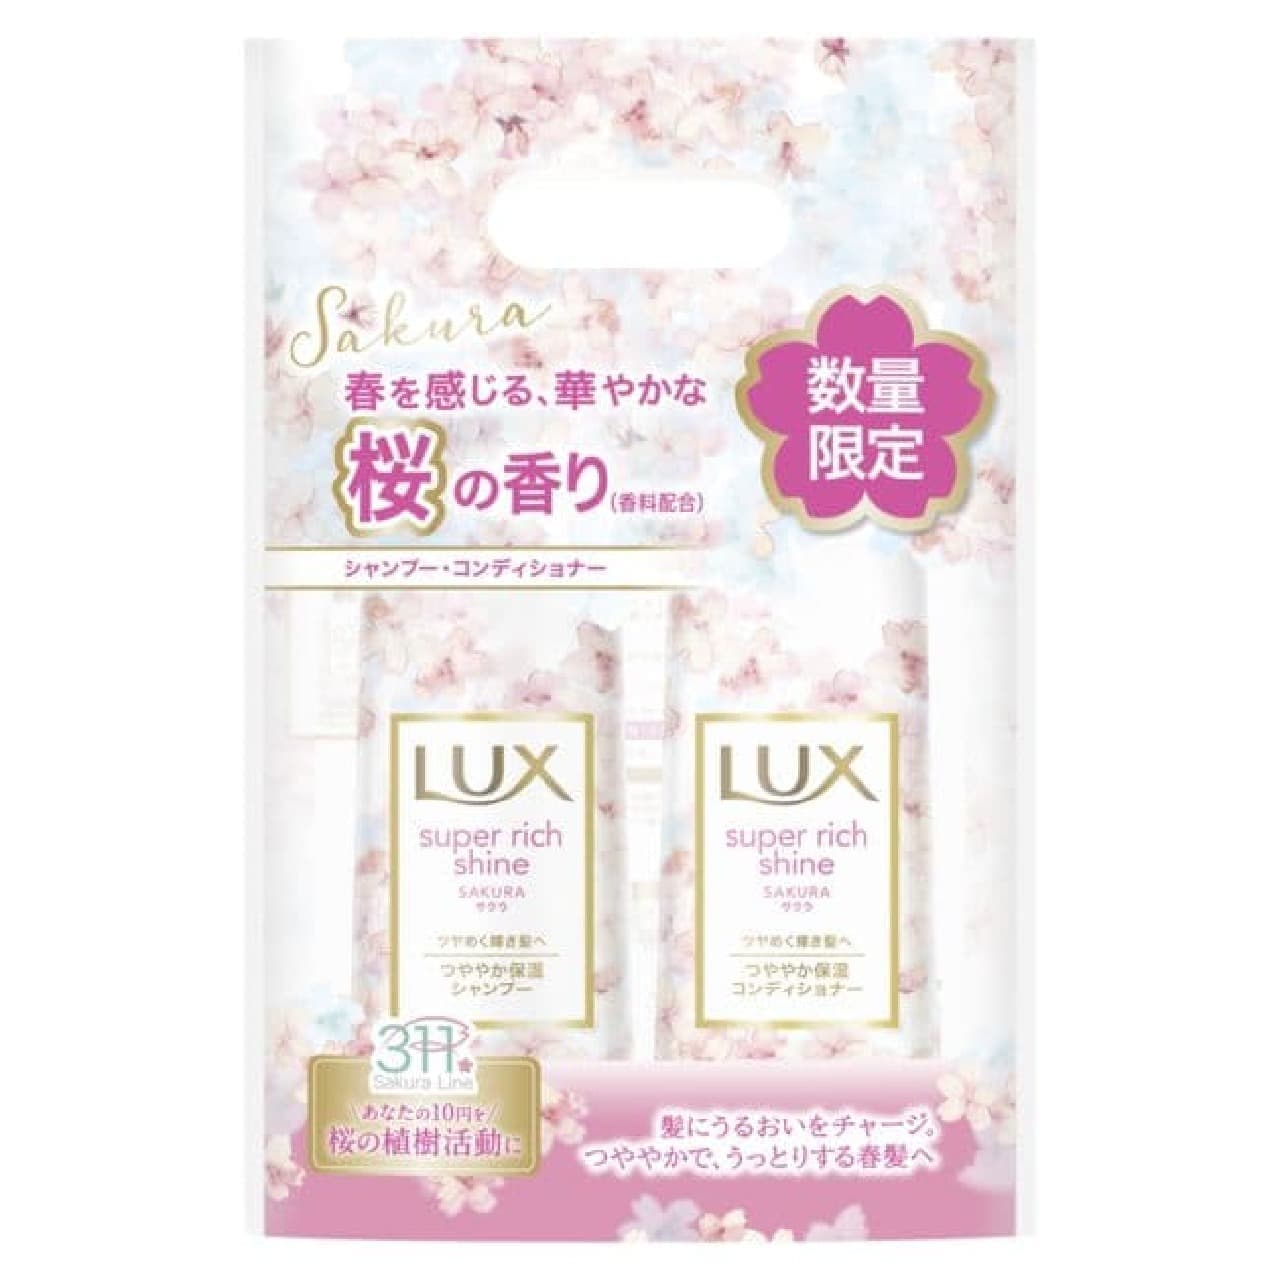 Lux Super Rich Shine Sakura